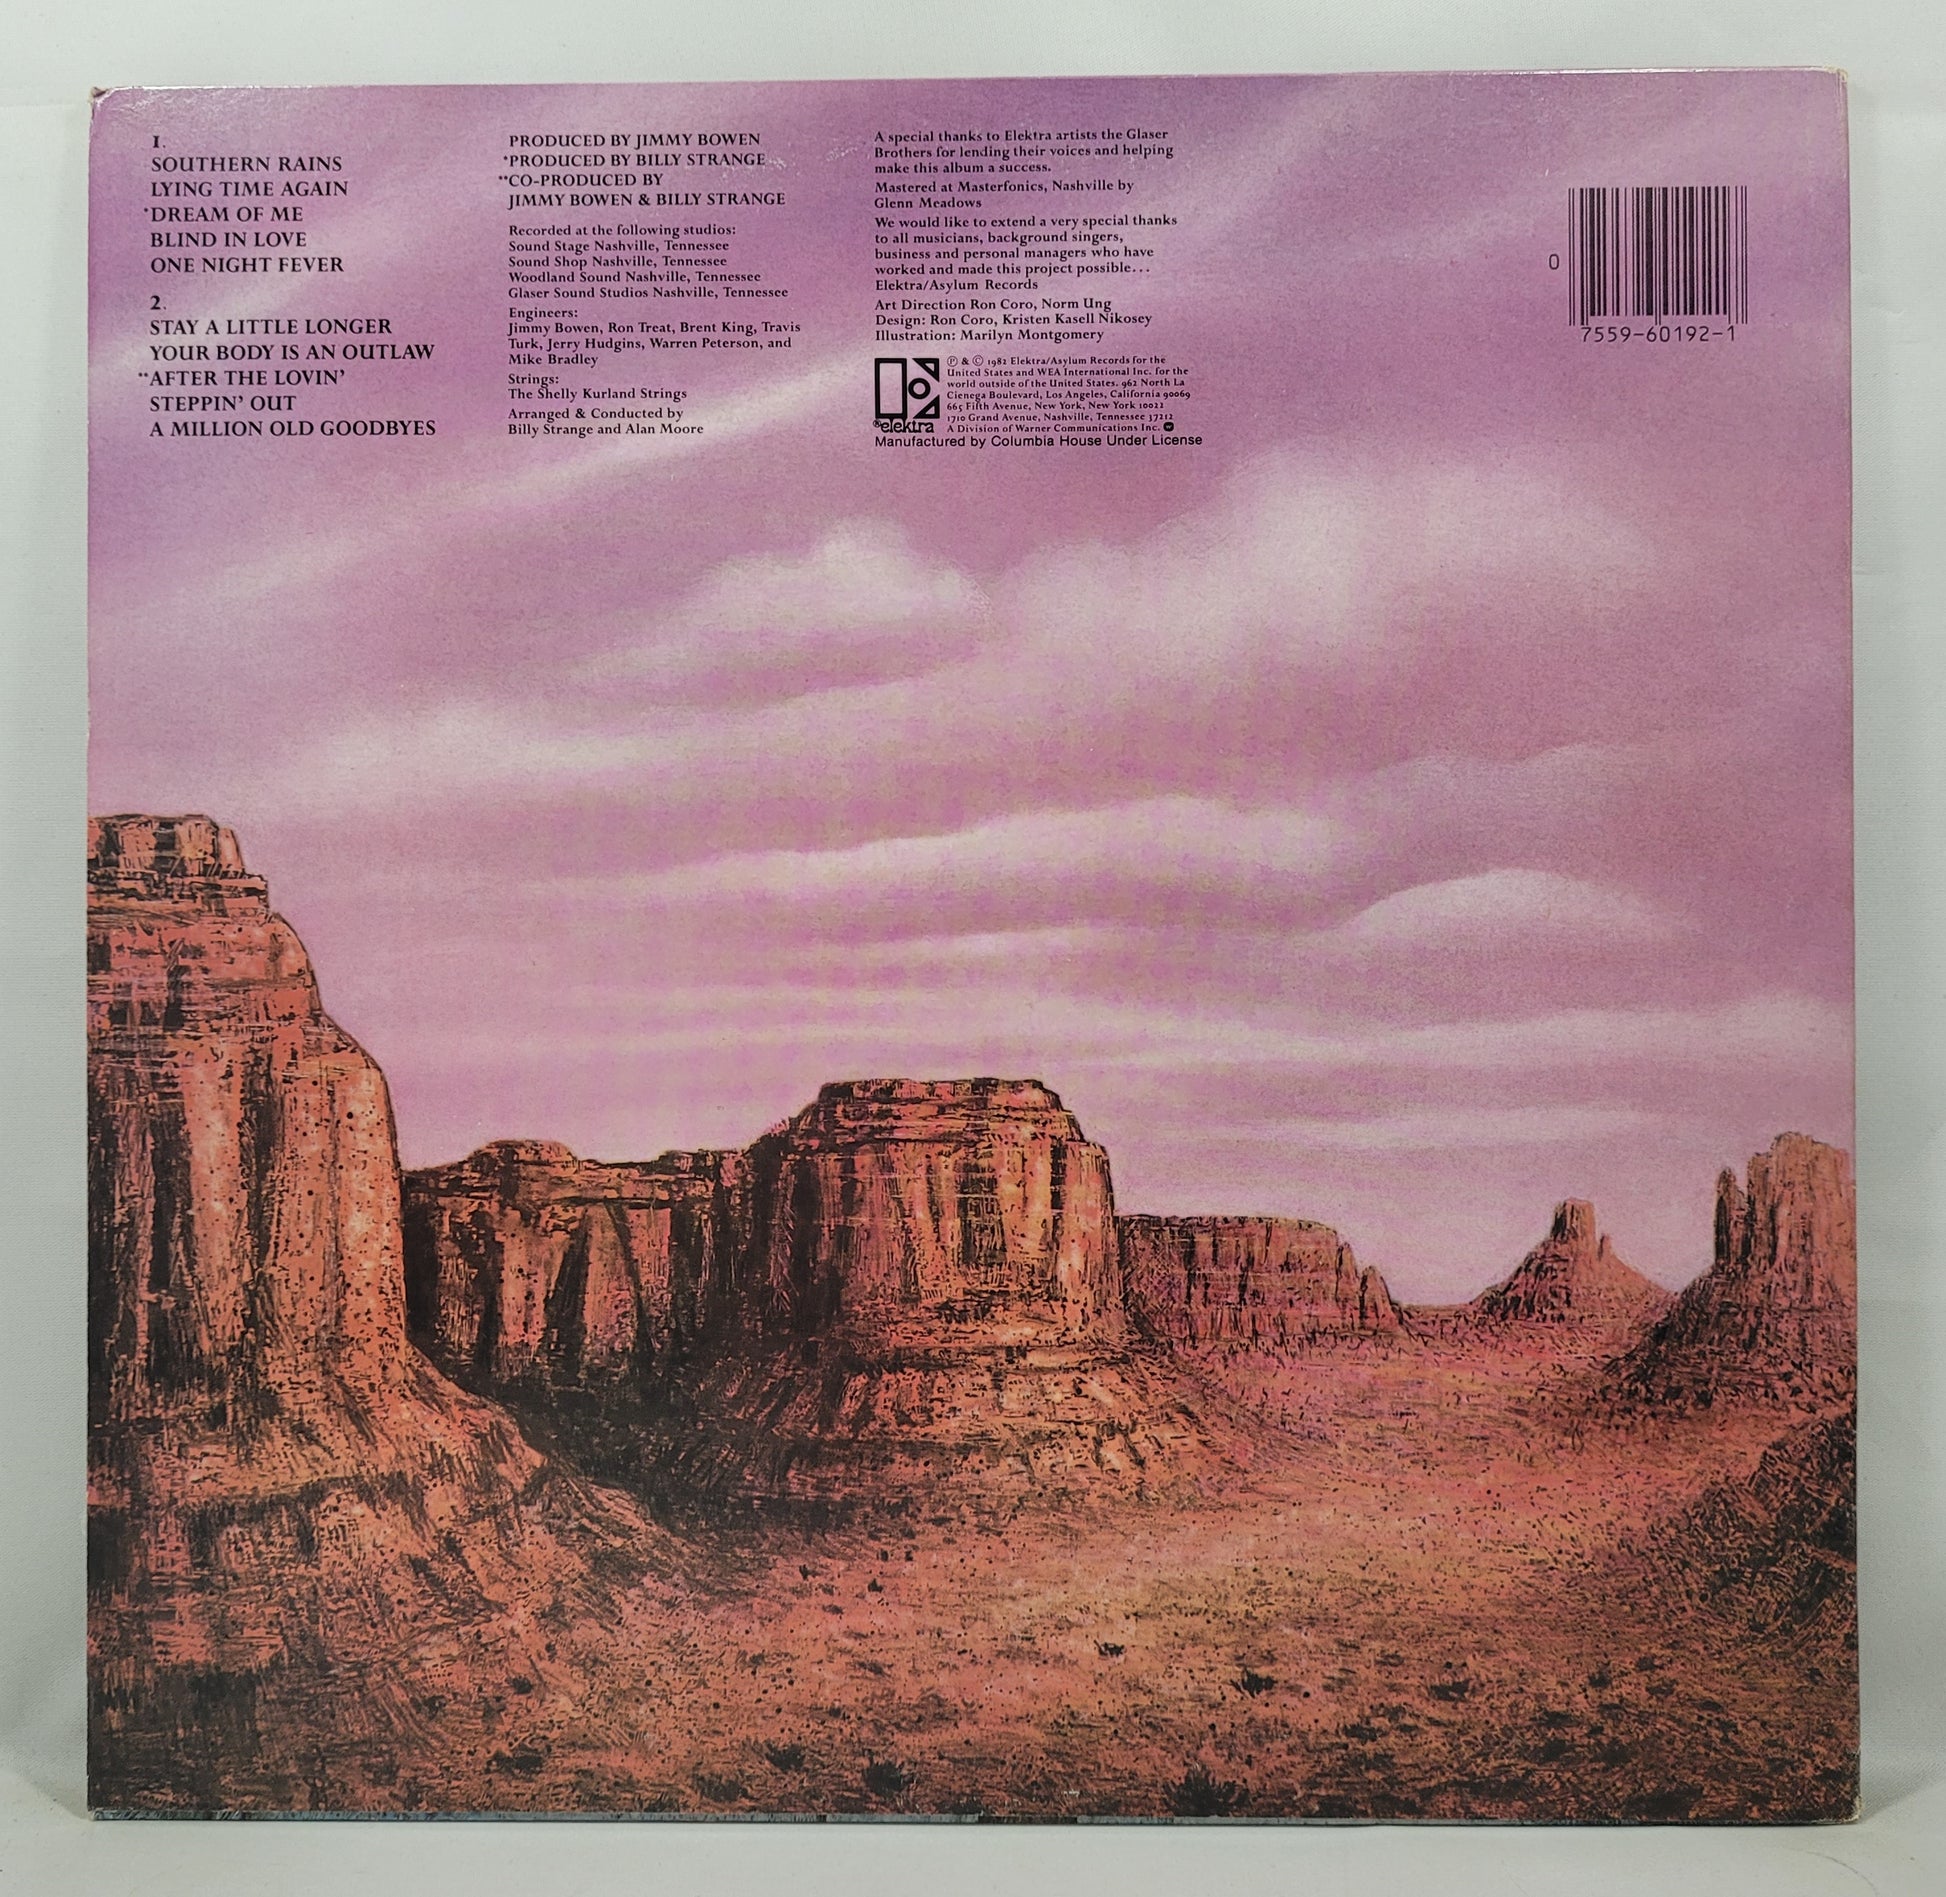 Mel Tillis - Mel Tillis' Greatest Hits [1982 Club] [Used Vinyl Record LP]